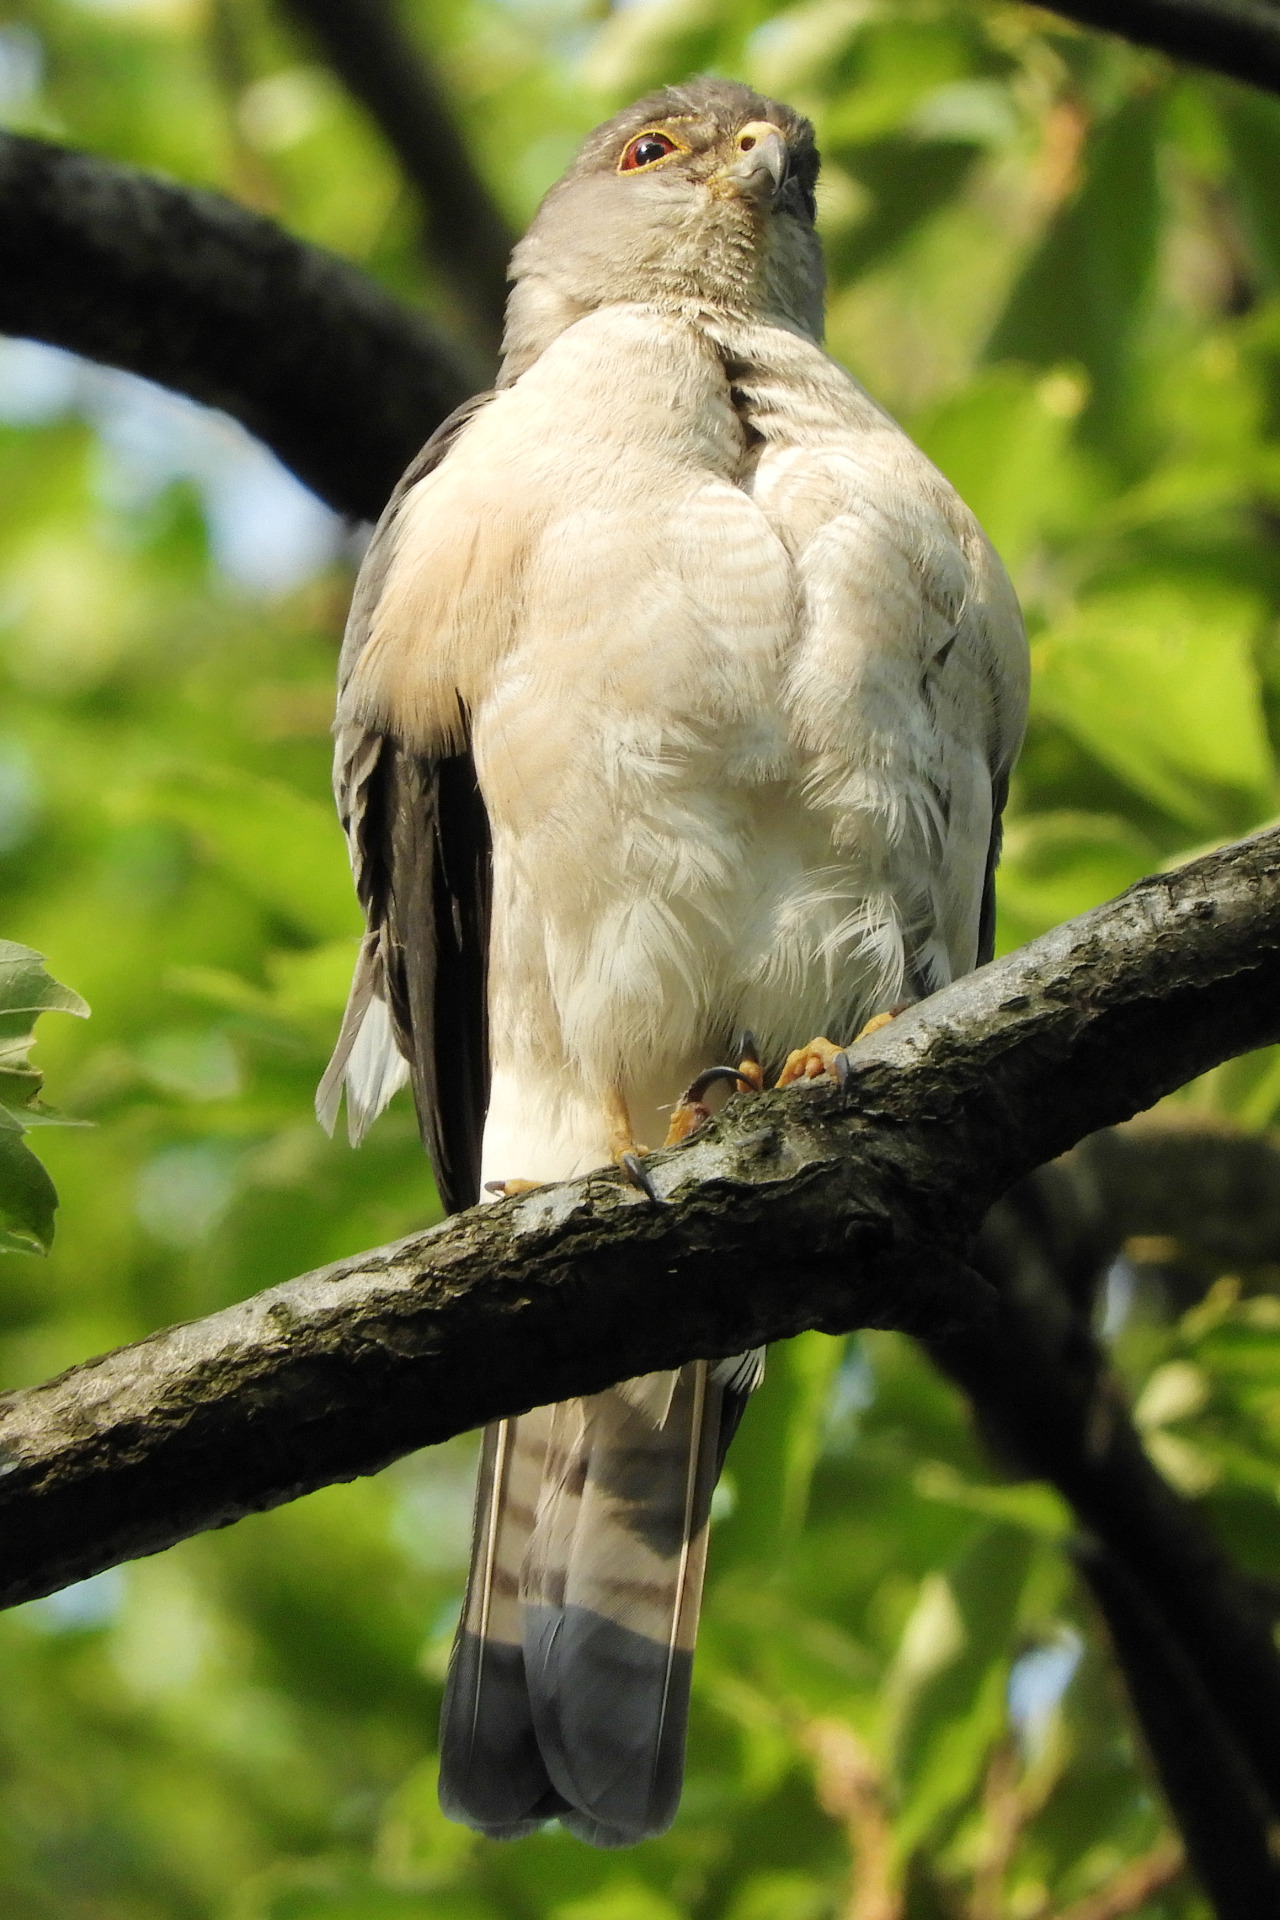 ツミ。 Japanese sparrowhawk. #Bird#Birds#Japanese sparrowhawk#野鳥#鳥#ツミ